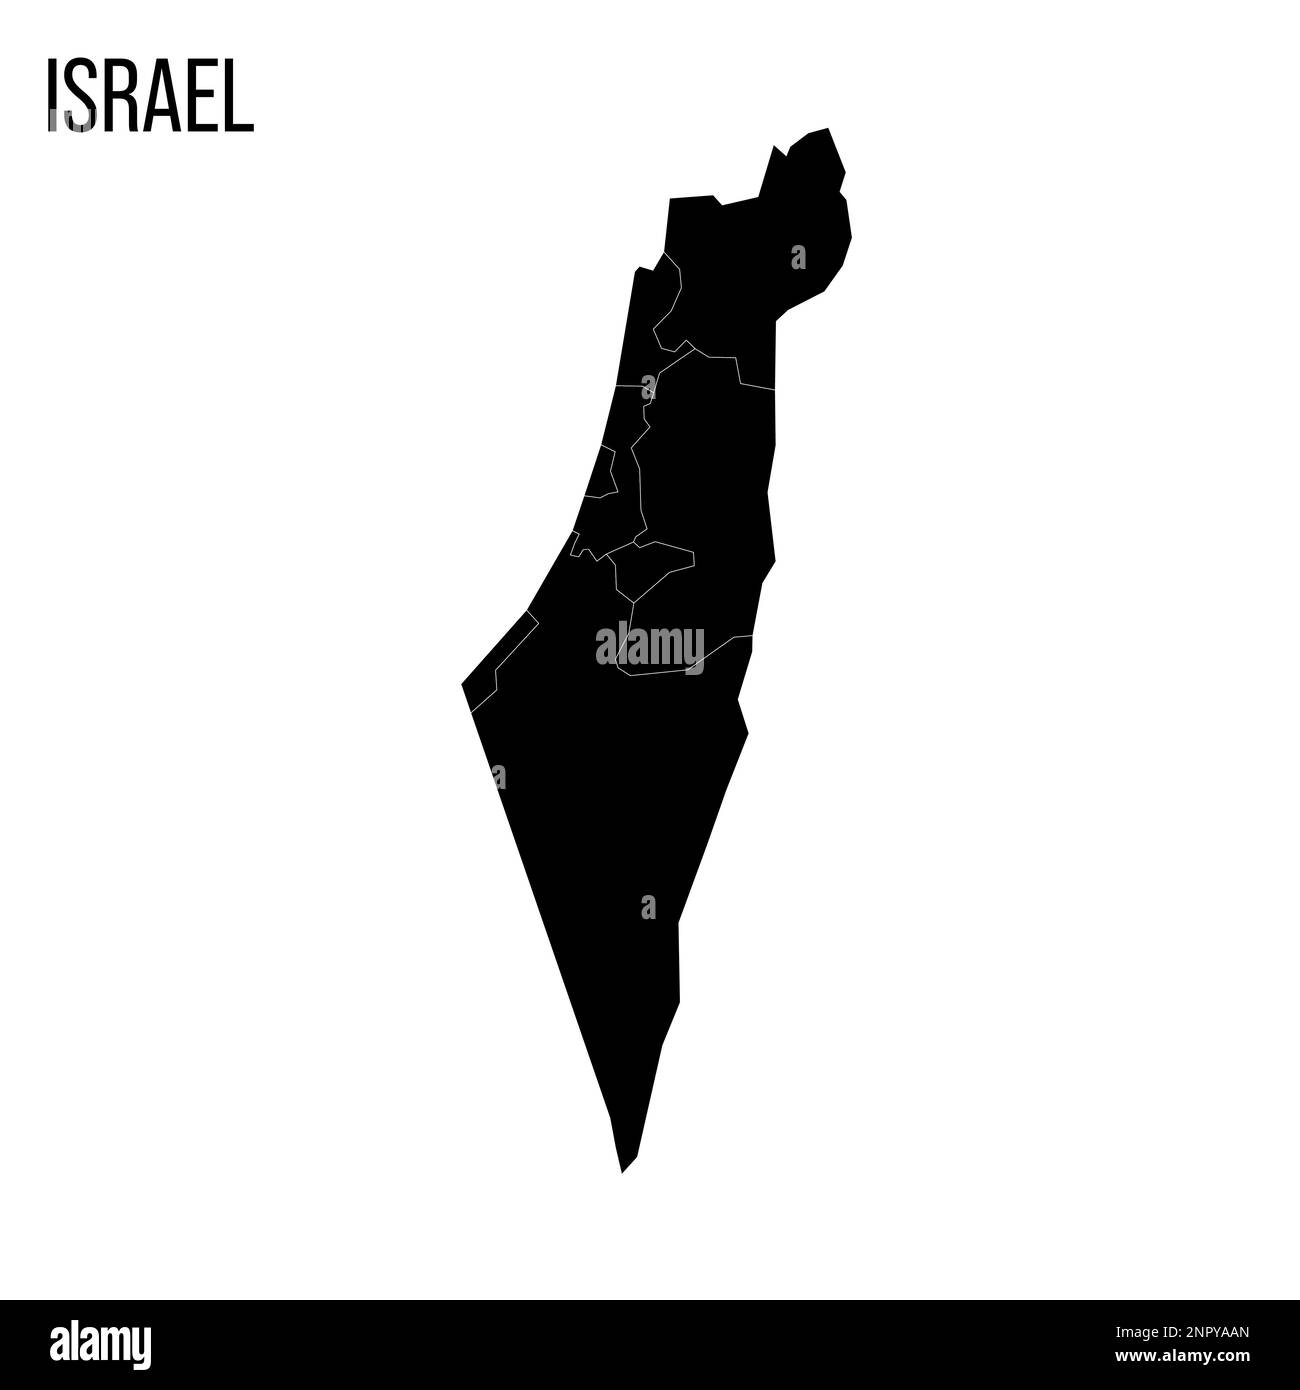 Israele mappa politica delle divisioni amministrative - distretti, striscia di Gaza e Judea e Samaria Area. Mappa nera vuota e nome del paese. Illustrazione Vettoriale